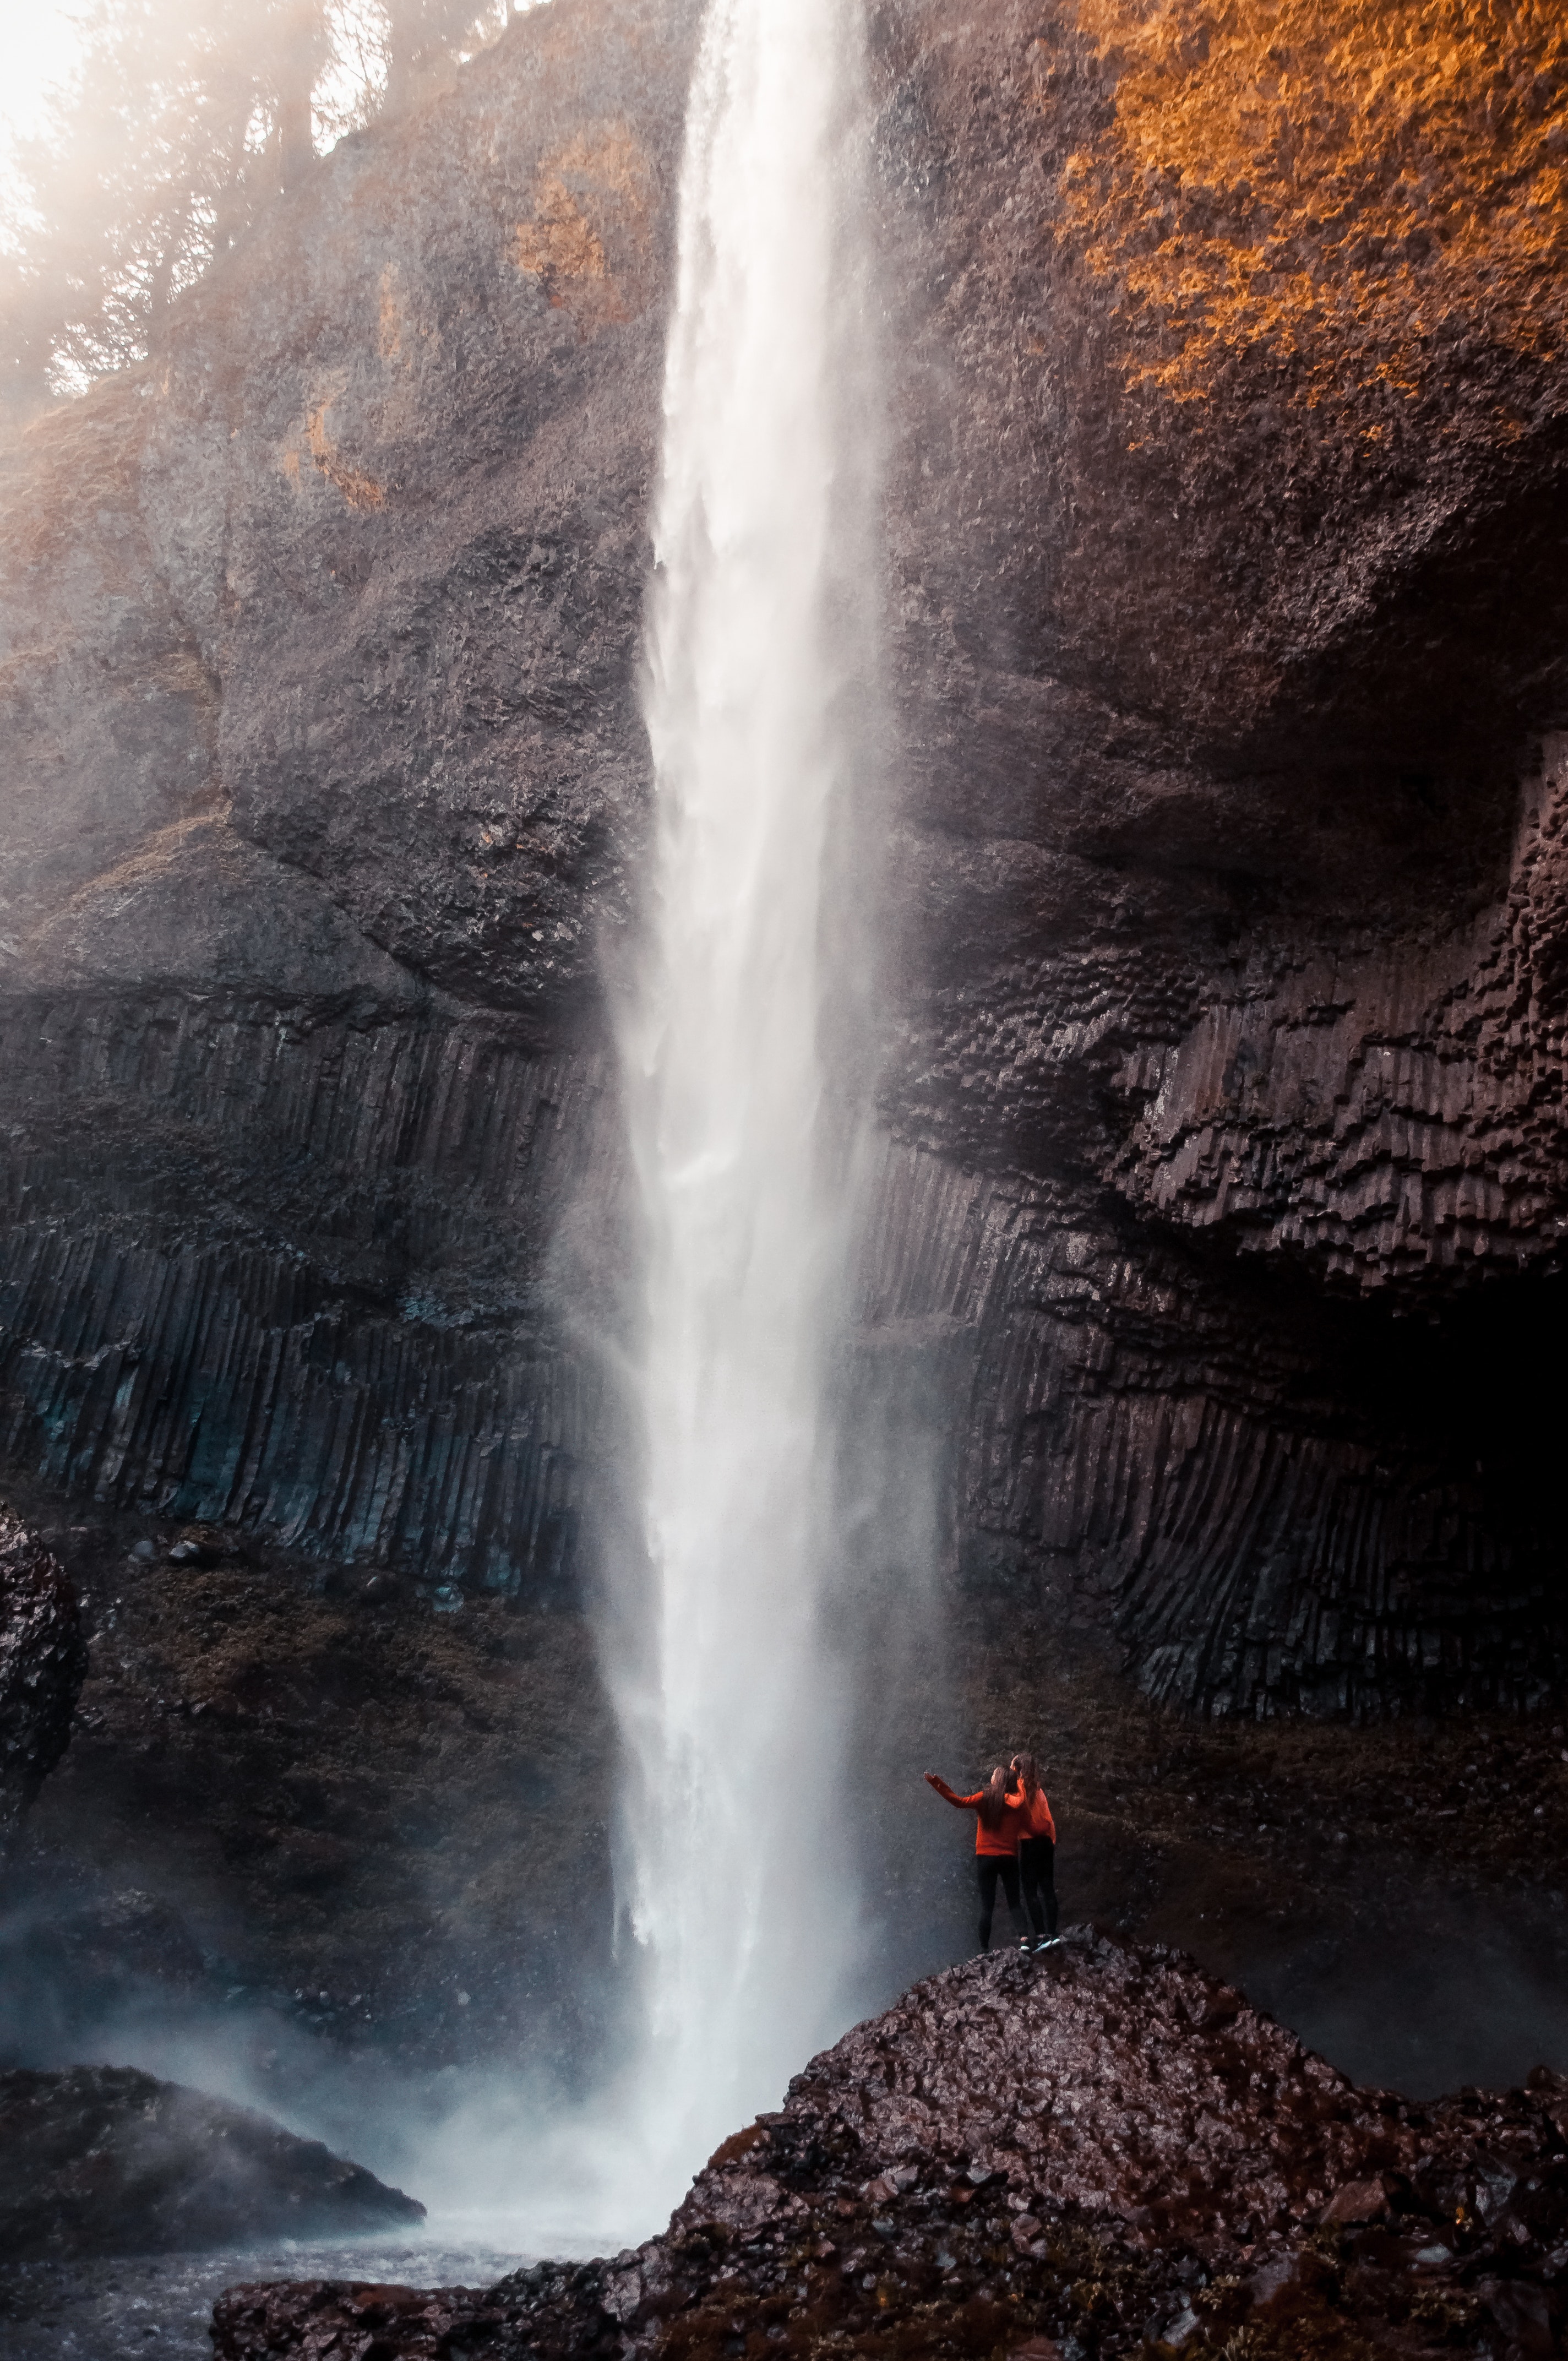 Two Man Beside Waterfall Taken At Daytime · Free Stock Photo